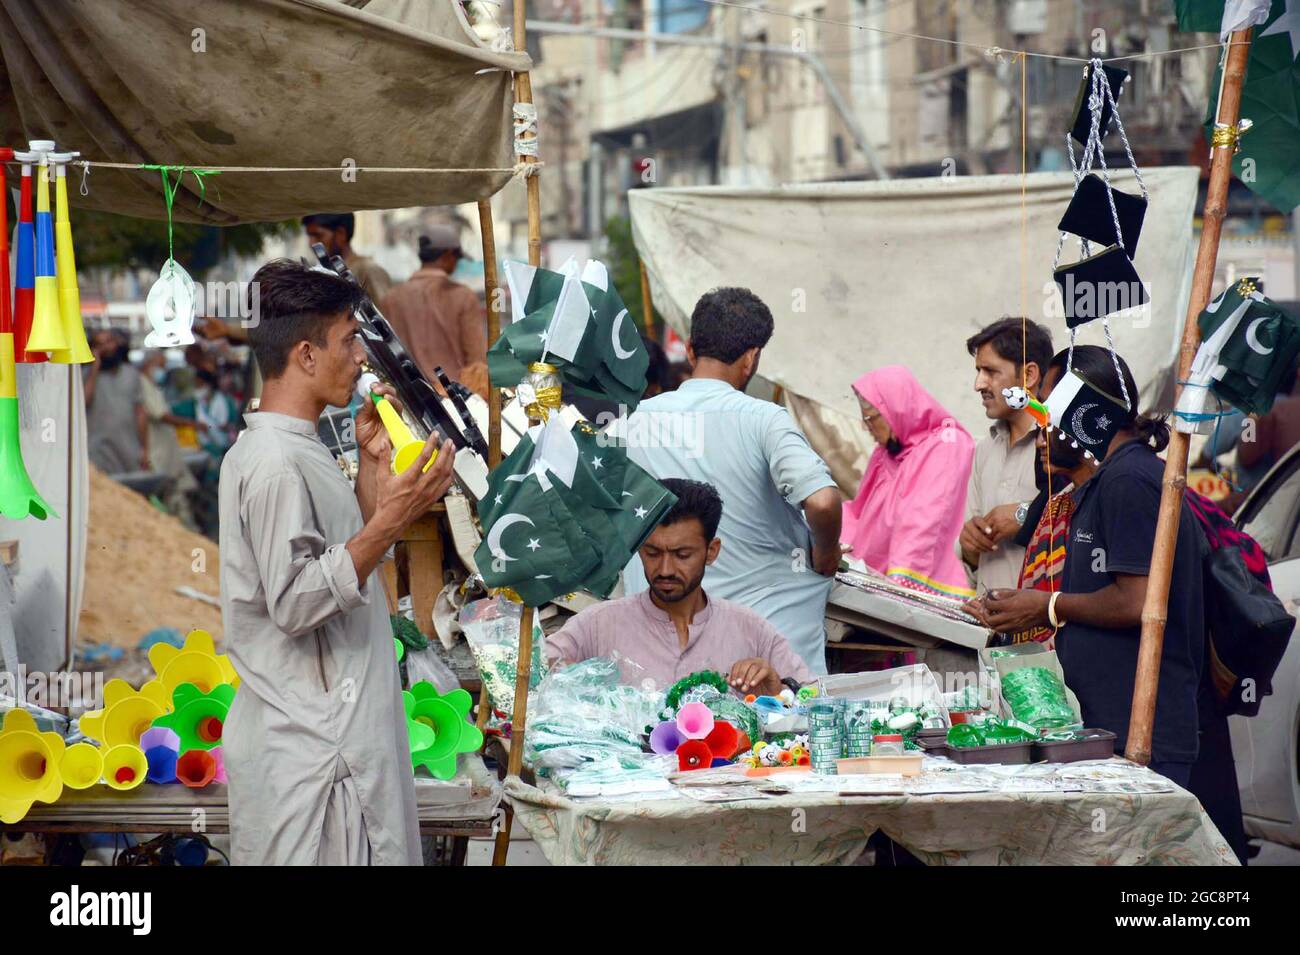 Bandiere del Pakistan, i raggruppamenti, le camicie stampate ed altri  articoli stanno vendendo sul lato della strada stalla in connessione del  giorno di indipendenza del Pakistan che viene avanti, a Karachi il